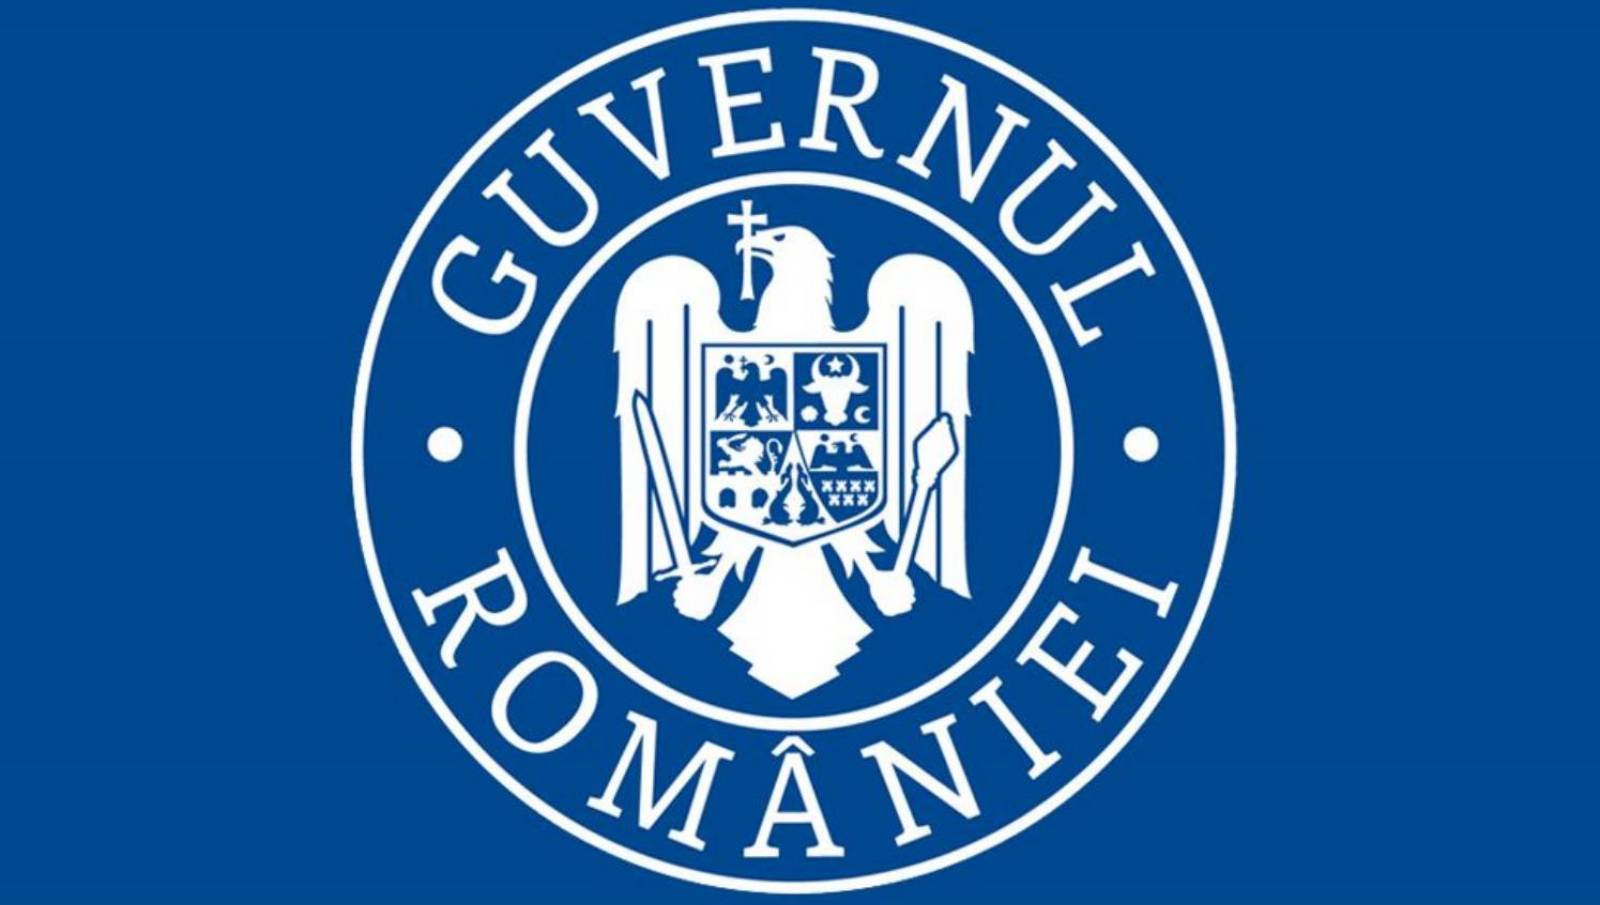 Den rumänska regeringen spelar ett rött manus